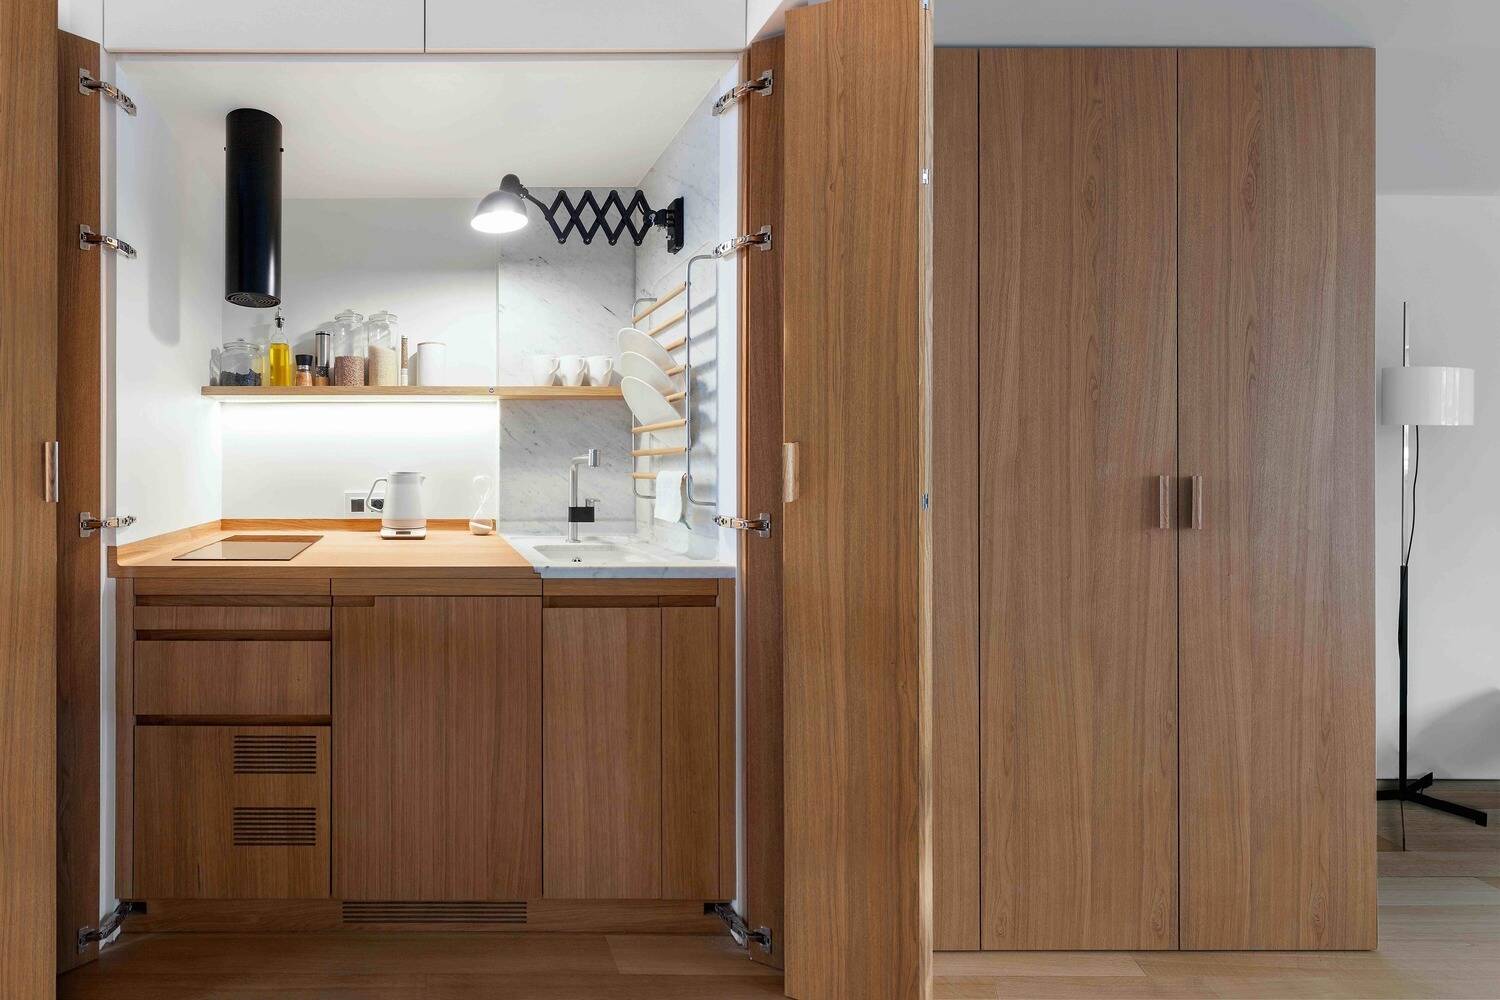 Ẩn phòng bếp: Xu hướng thiết kế mới để không gian rộng rãi hơn - Ảnh 2.